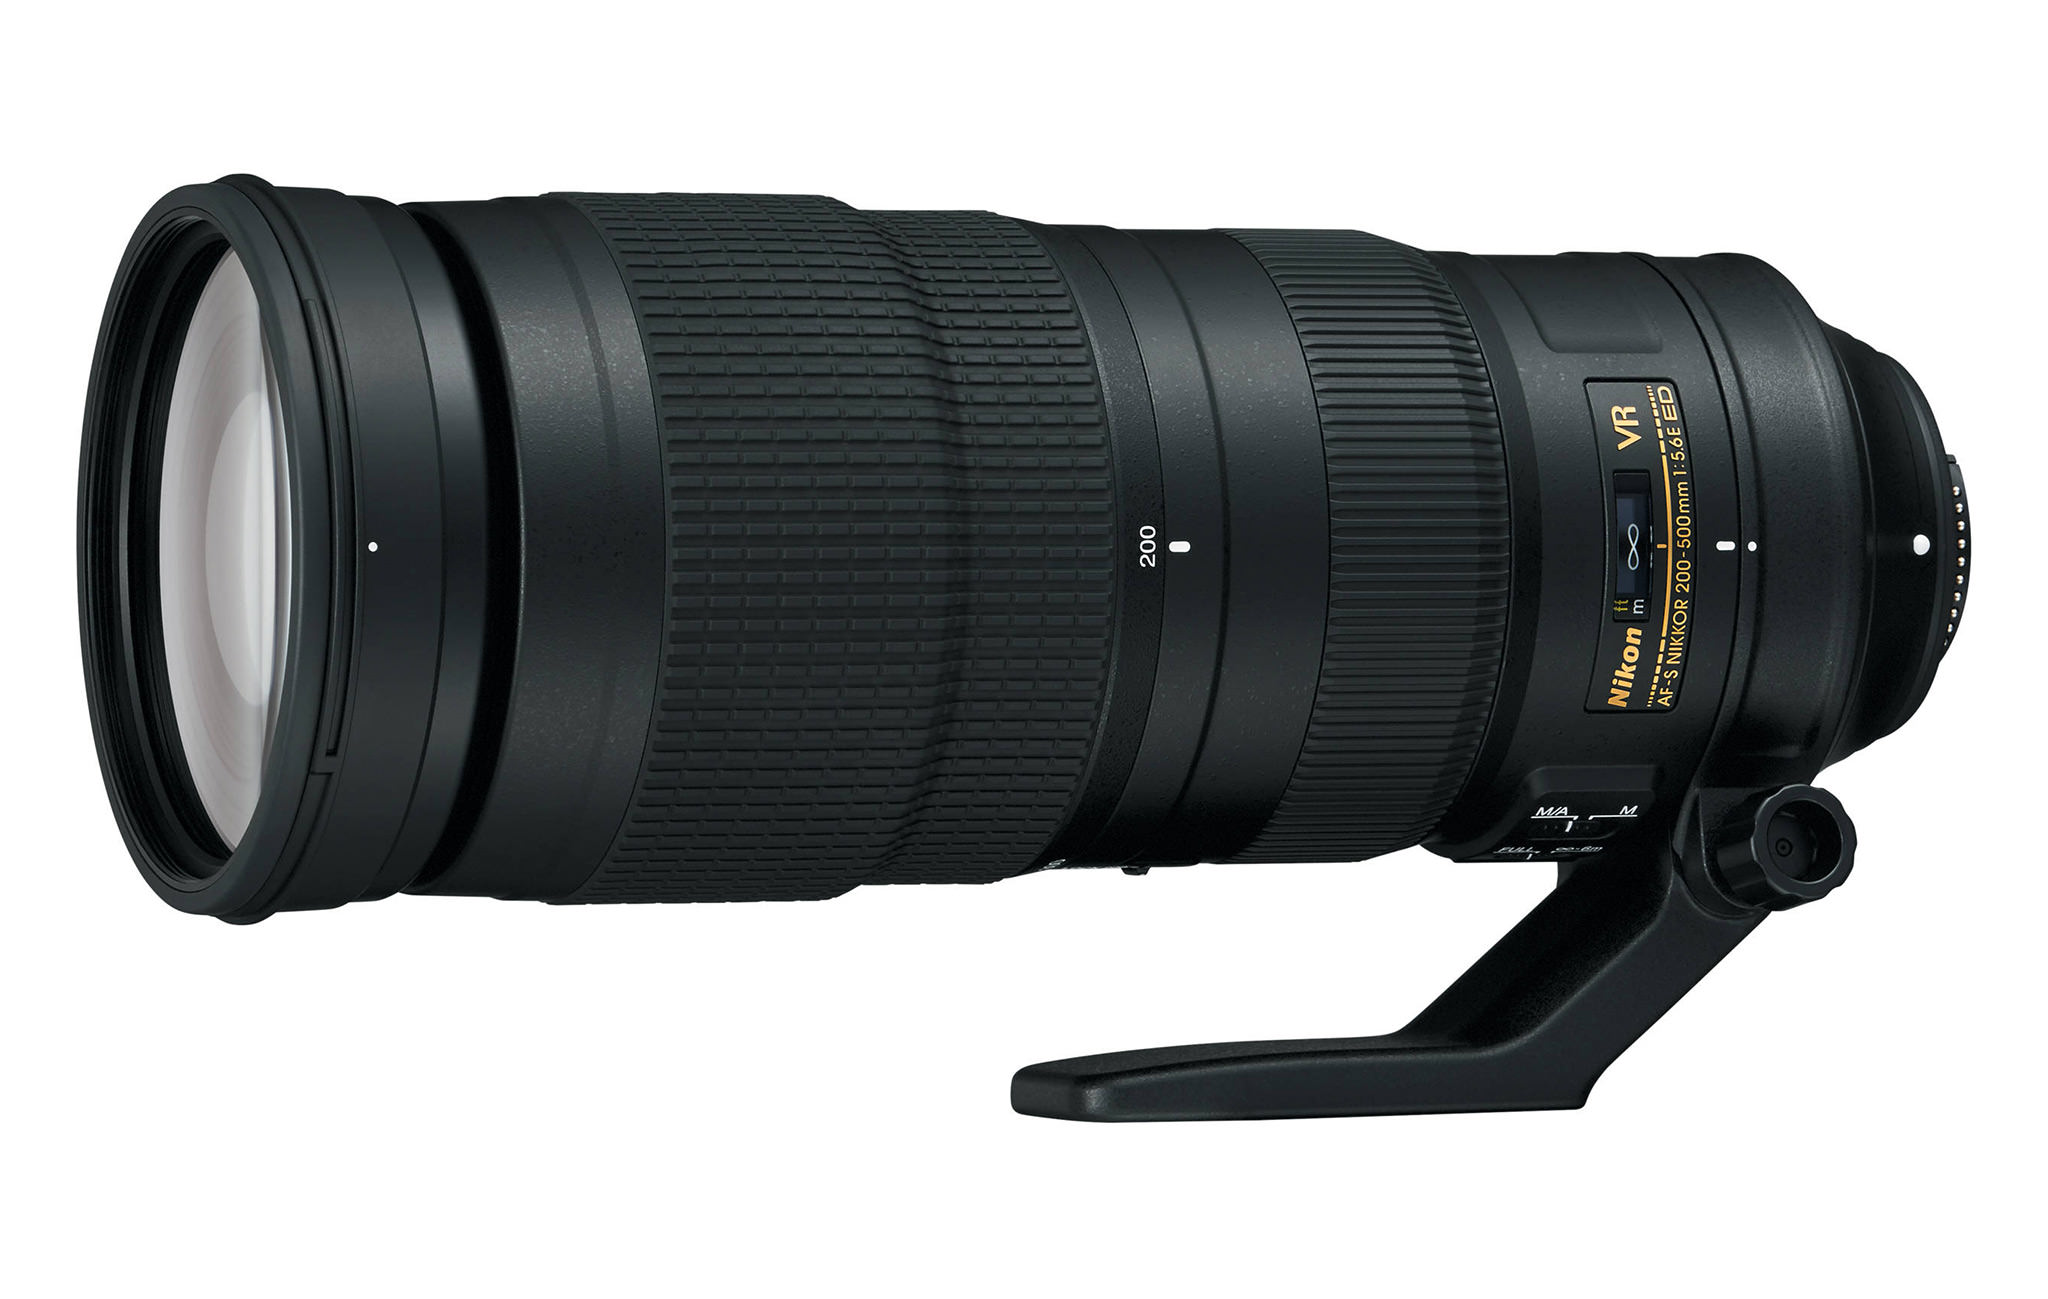 Rode datum voor mij Overredend Nikon 200-500mm f/5.6E VR Review